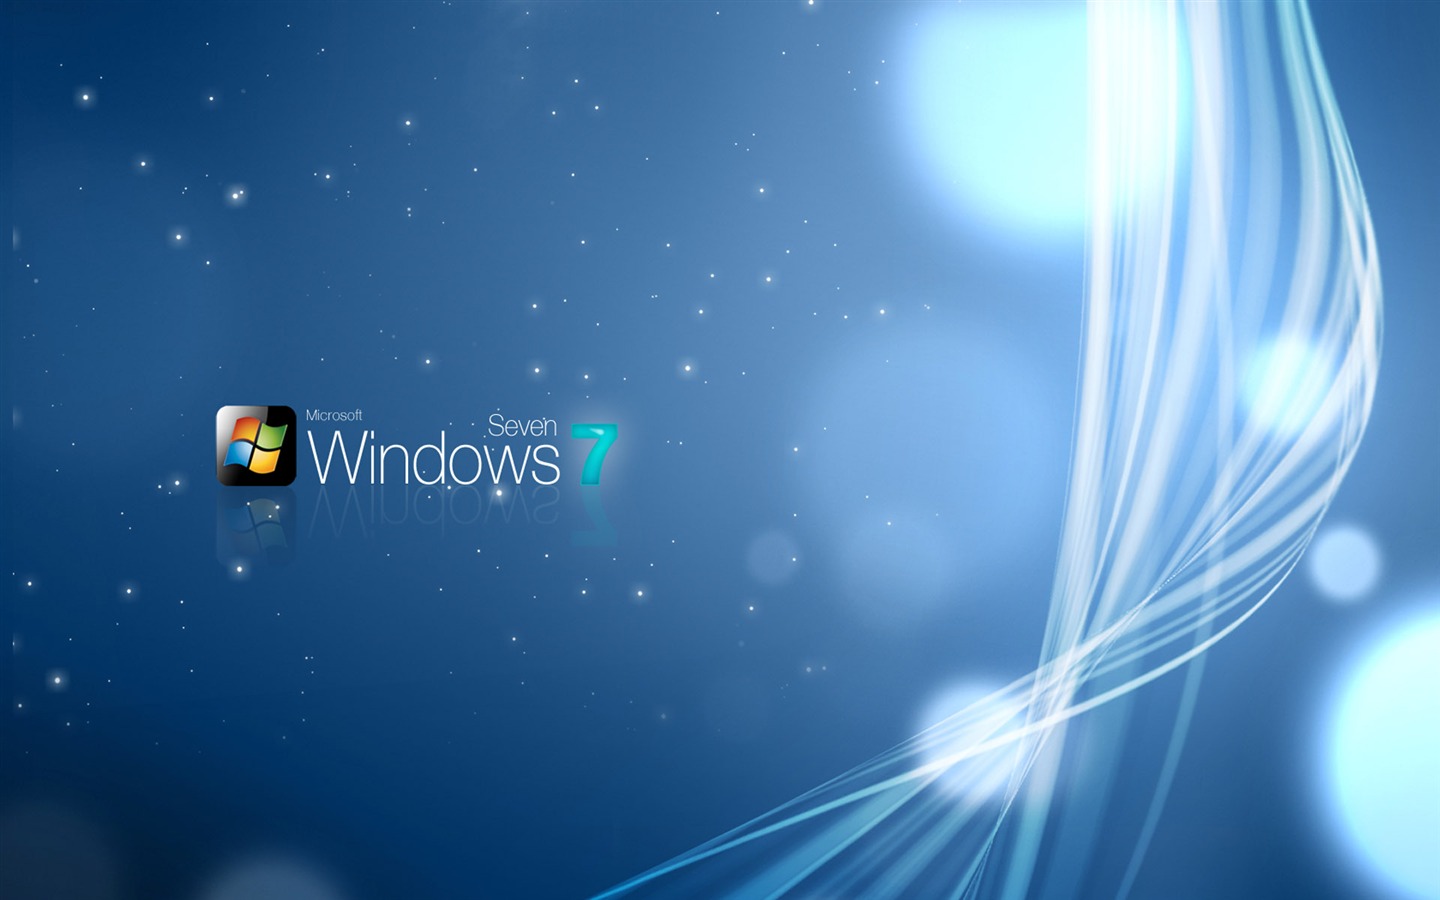 Windows7 theme wallpaper (2) #7 - 1440x900